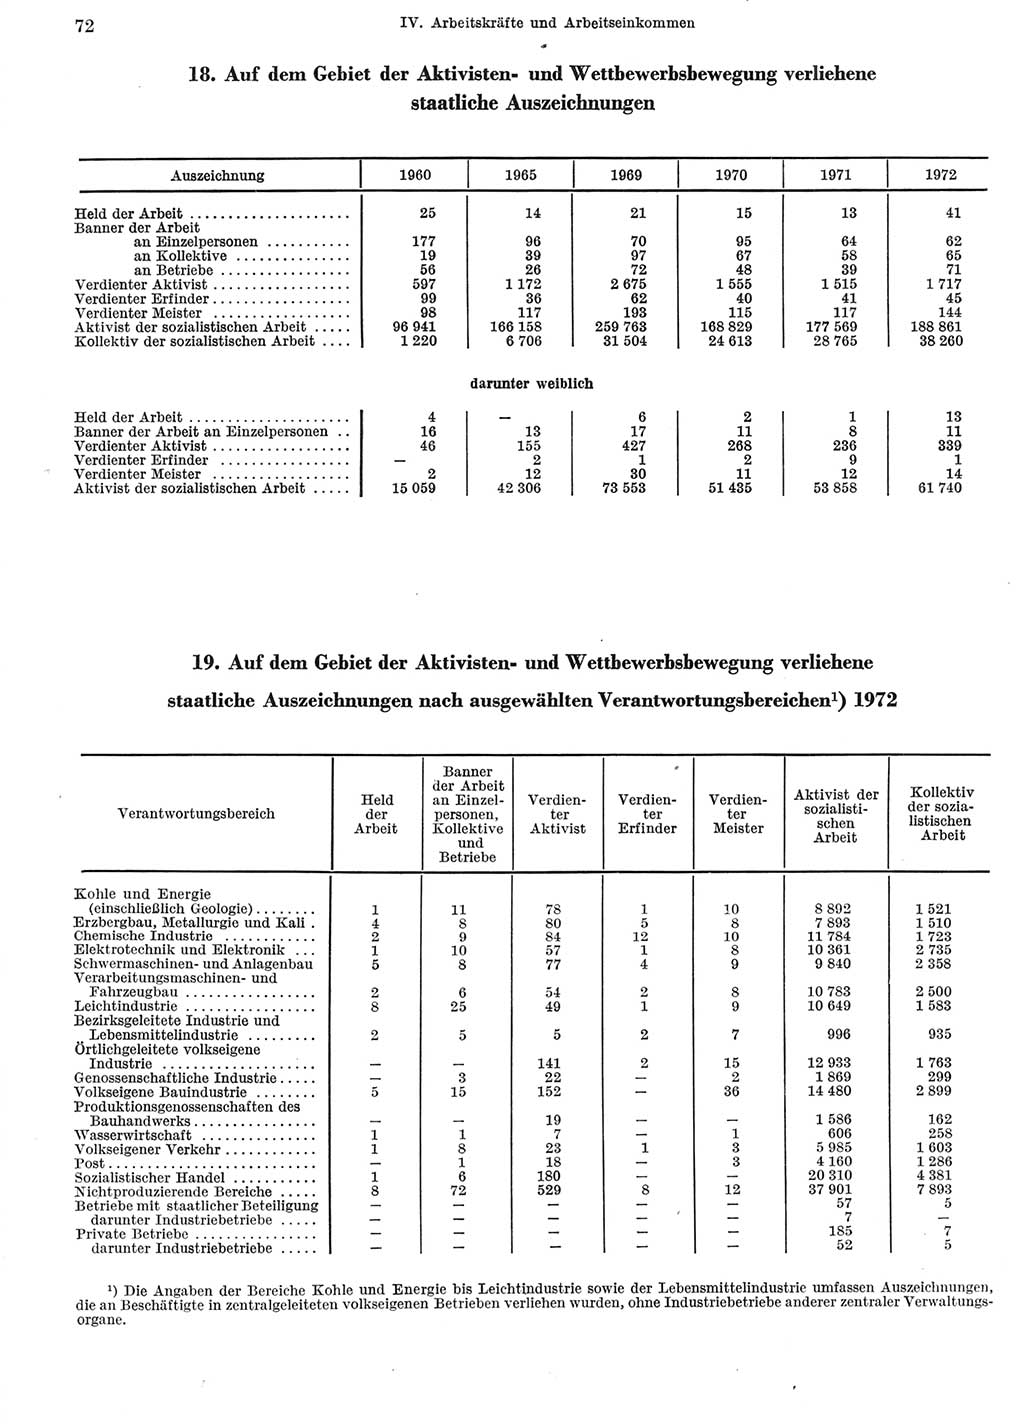 Statistisches Jahrbuch der Deutschen Demokratischen Republik (DDR) 1973, Seite 72 (Stat. Jb. DDR 1973, S. 72)